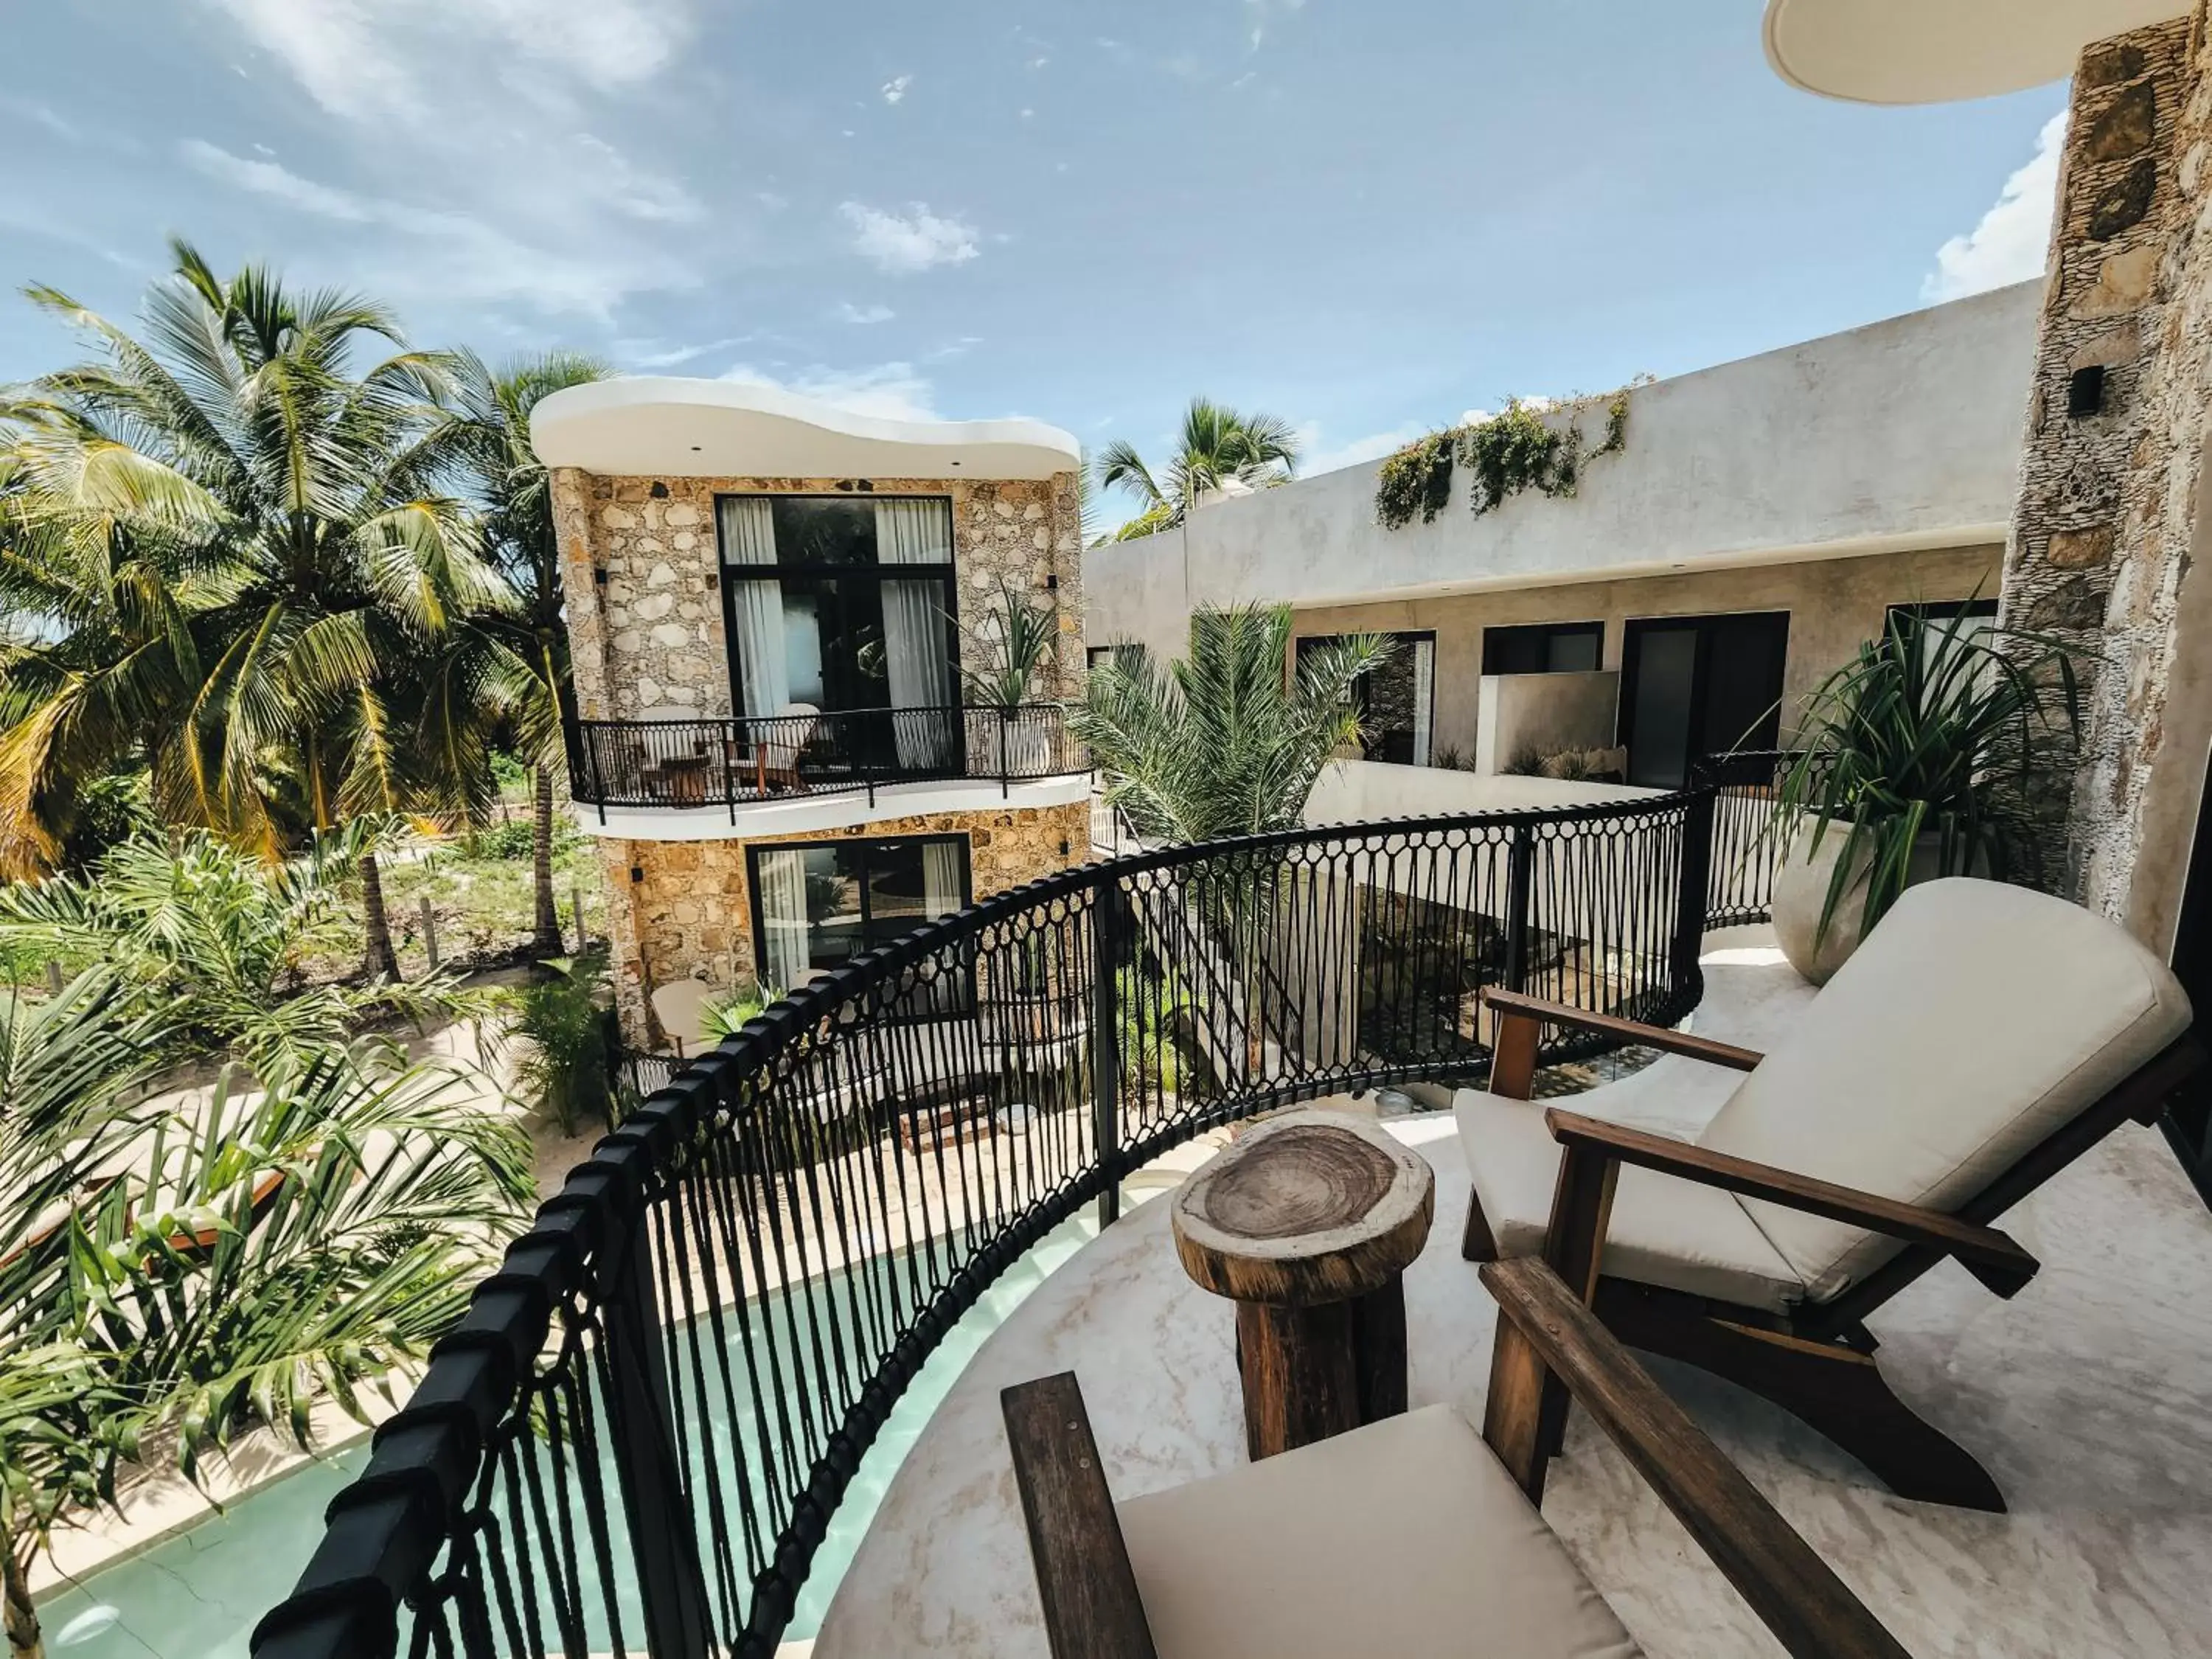 Property building, Balcony/Terrace in Cucu Hotel El Cuyo